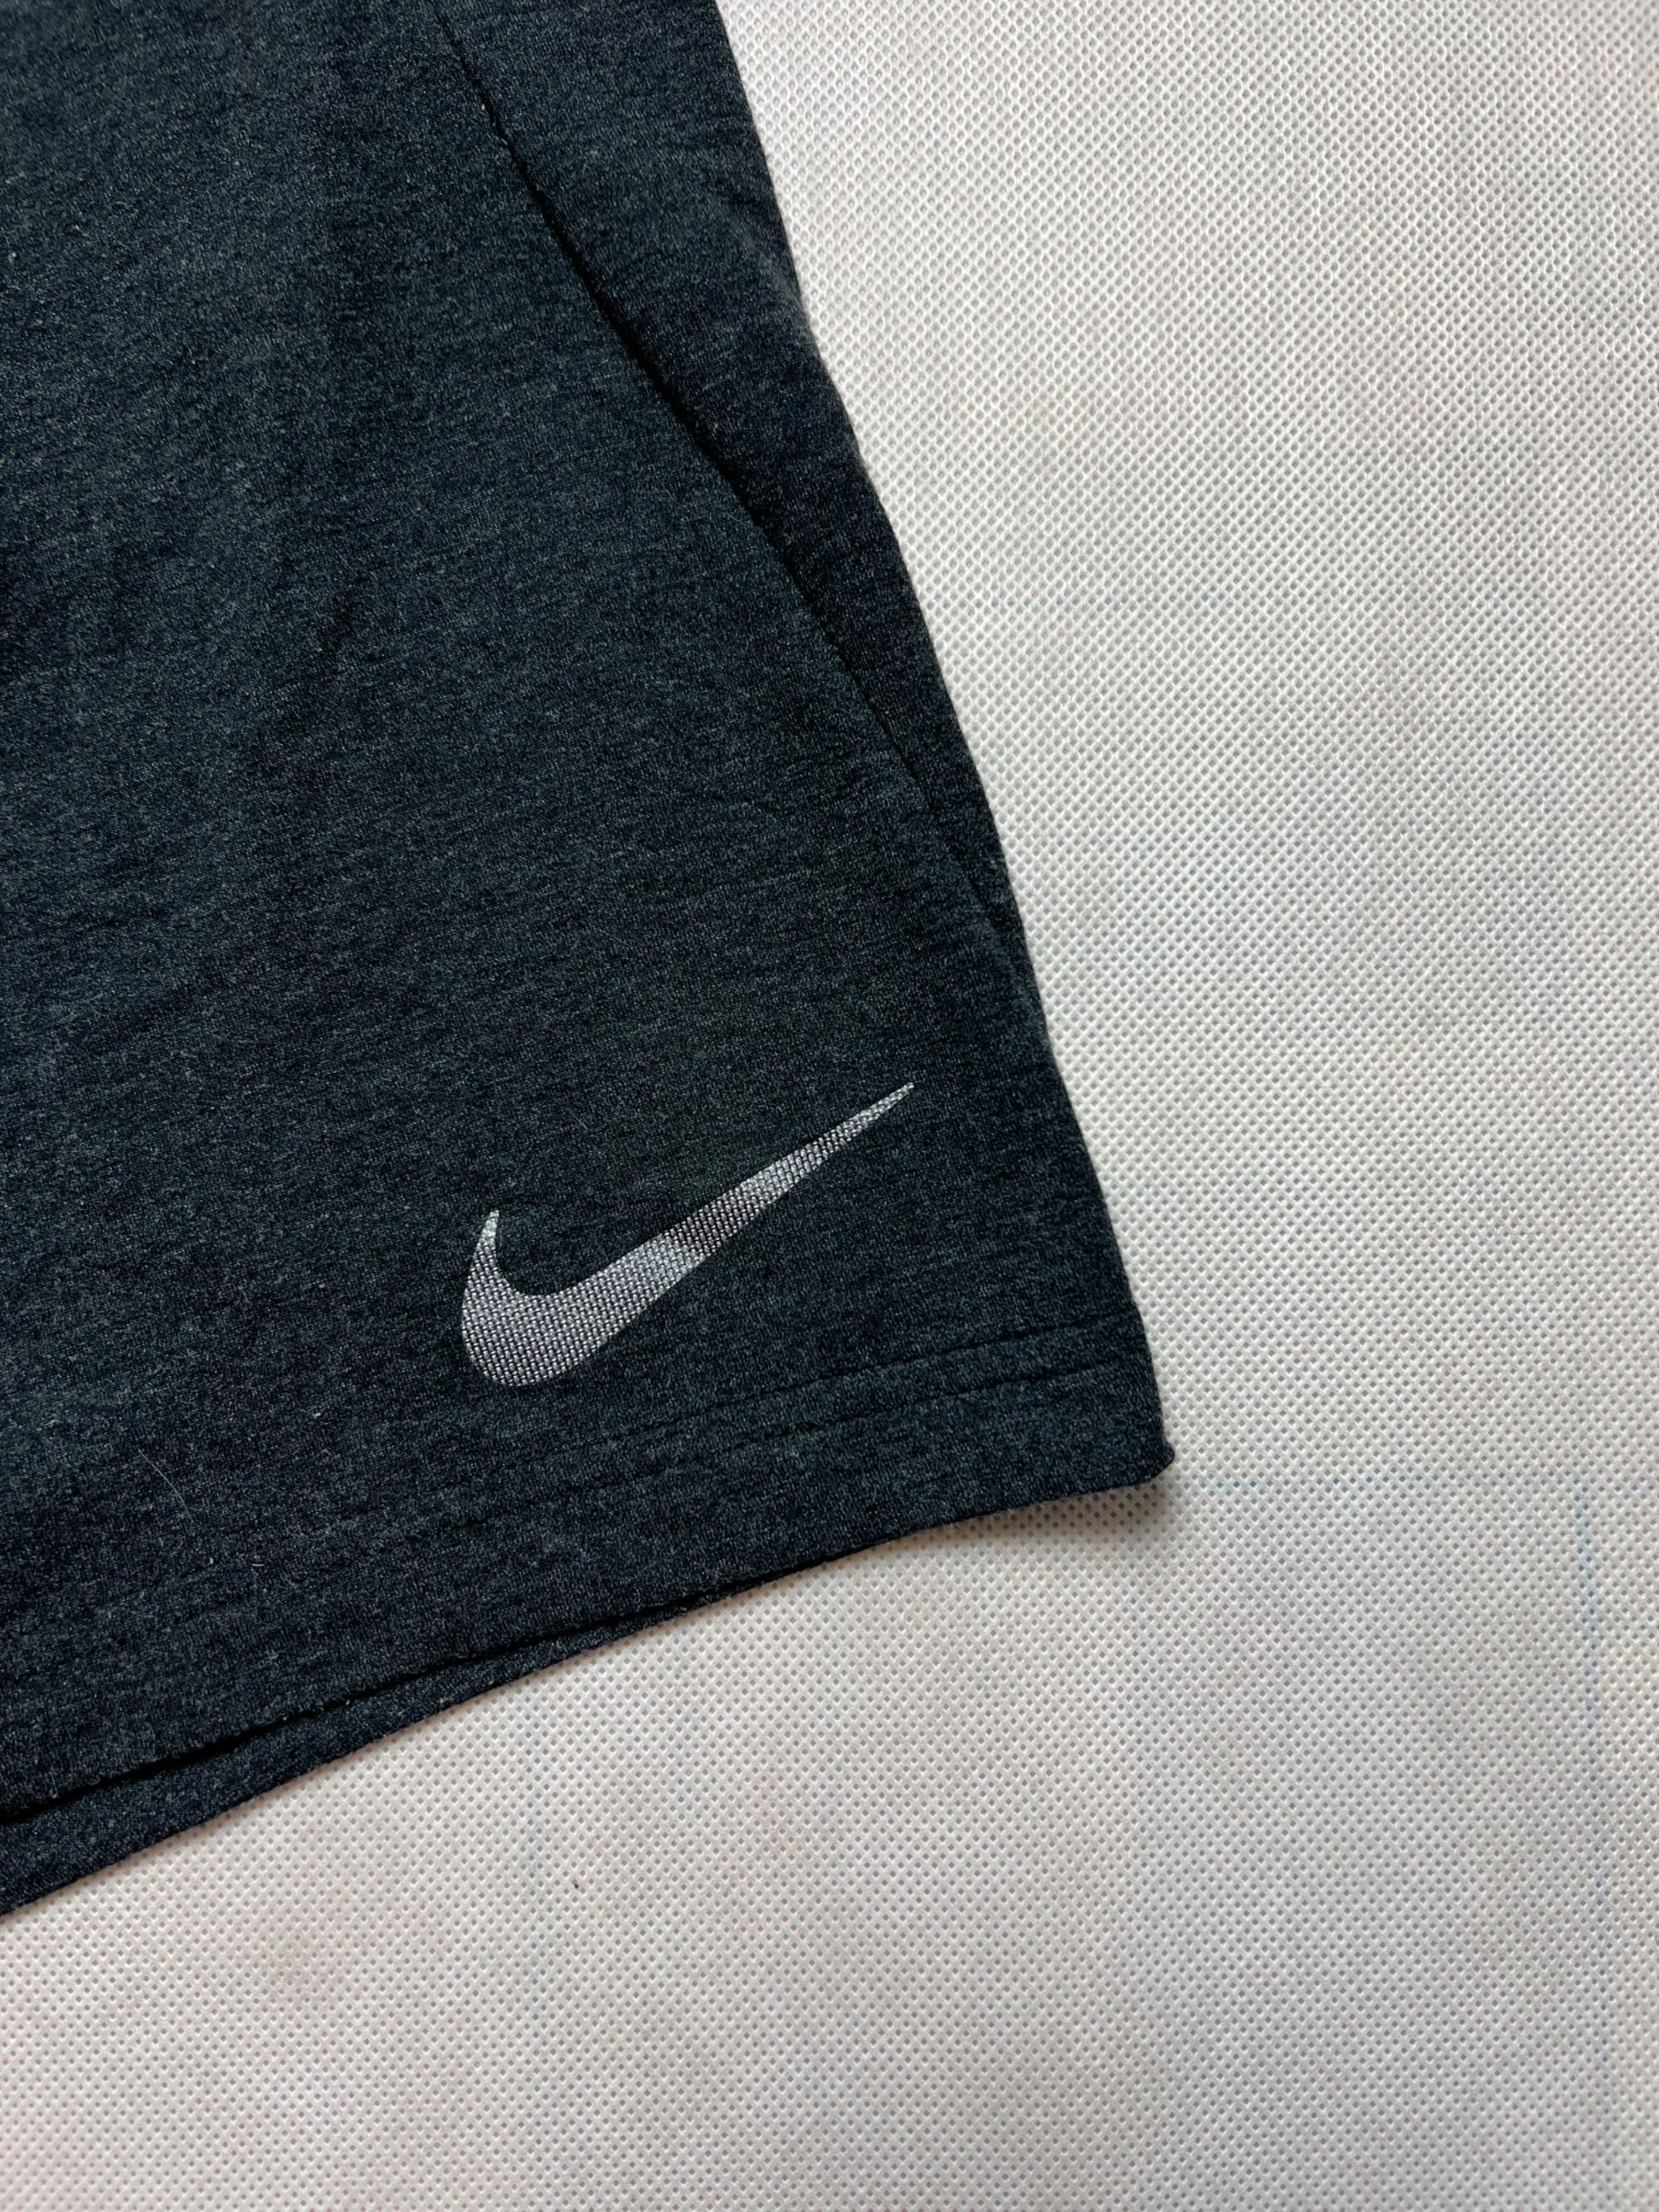 Spodenki Nike small logo